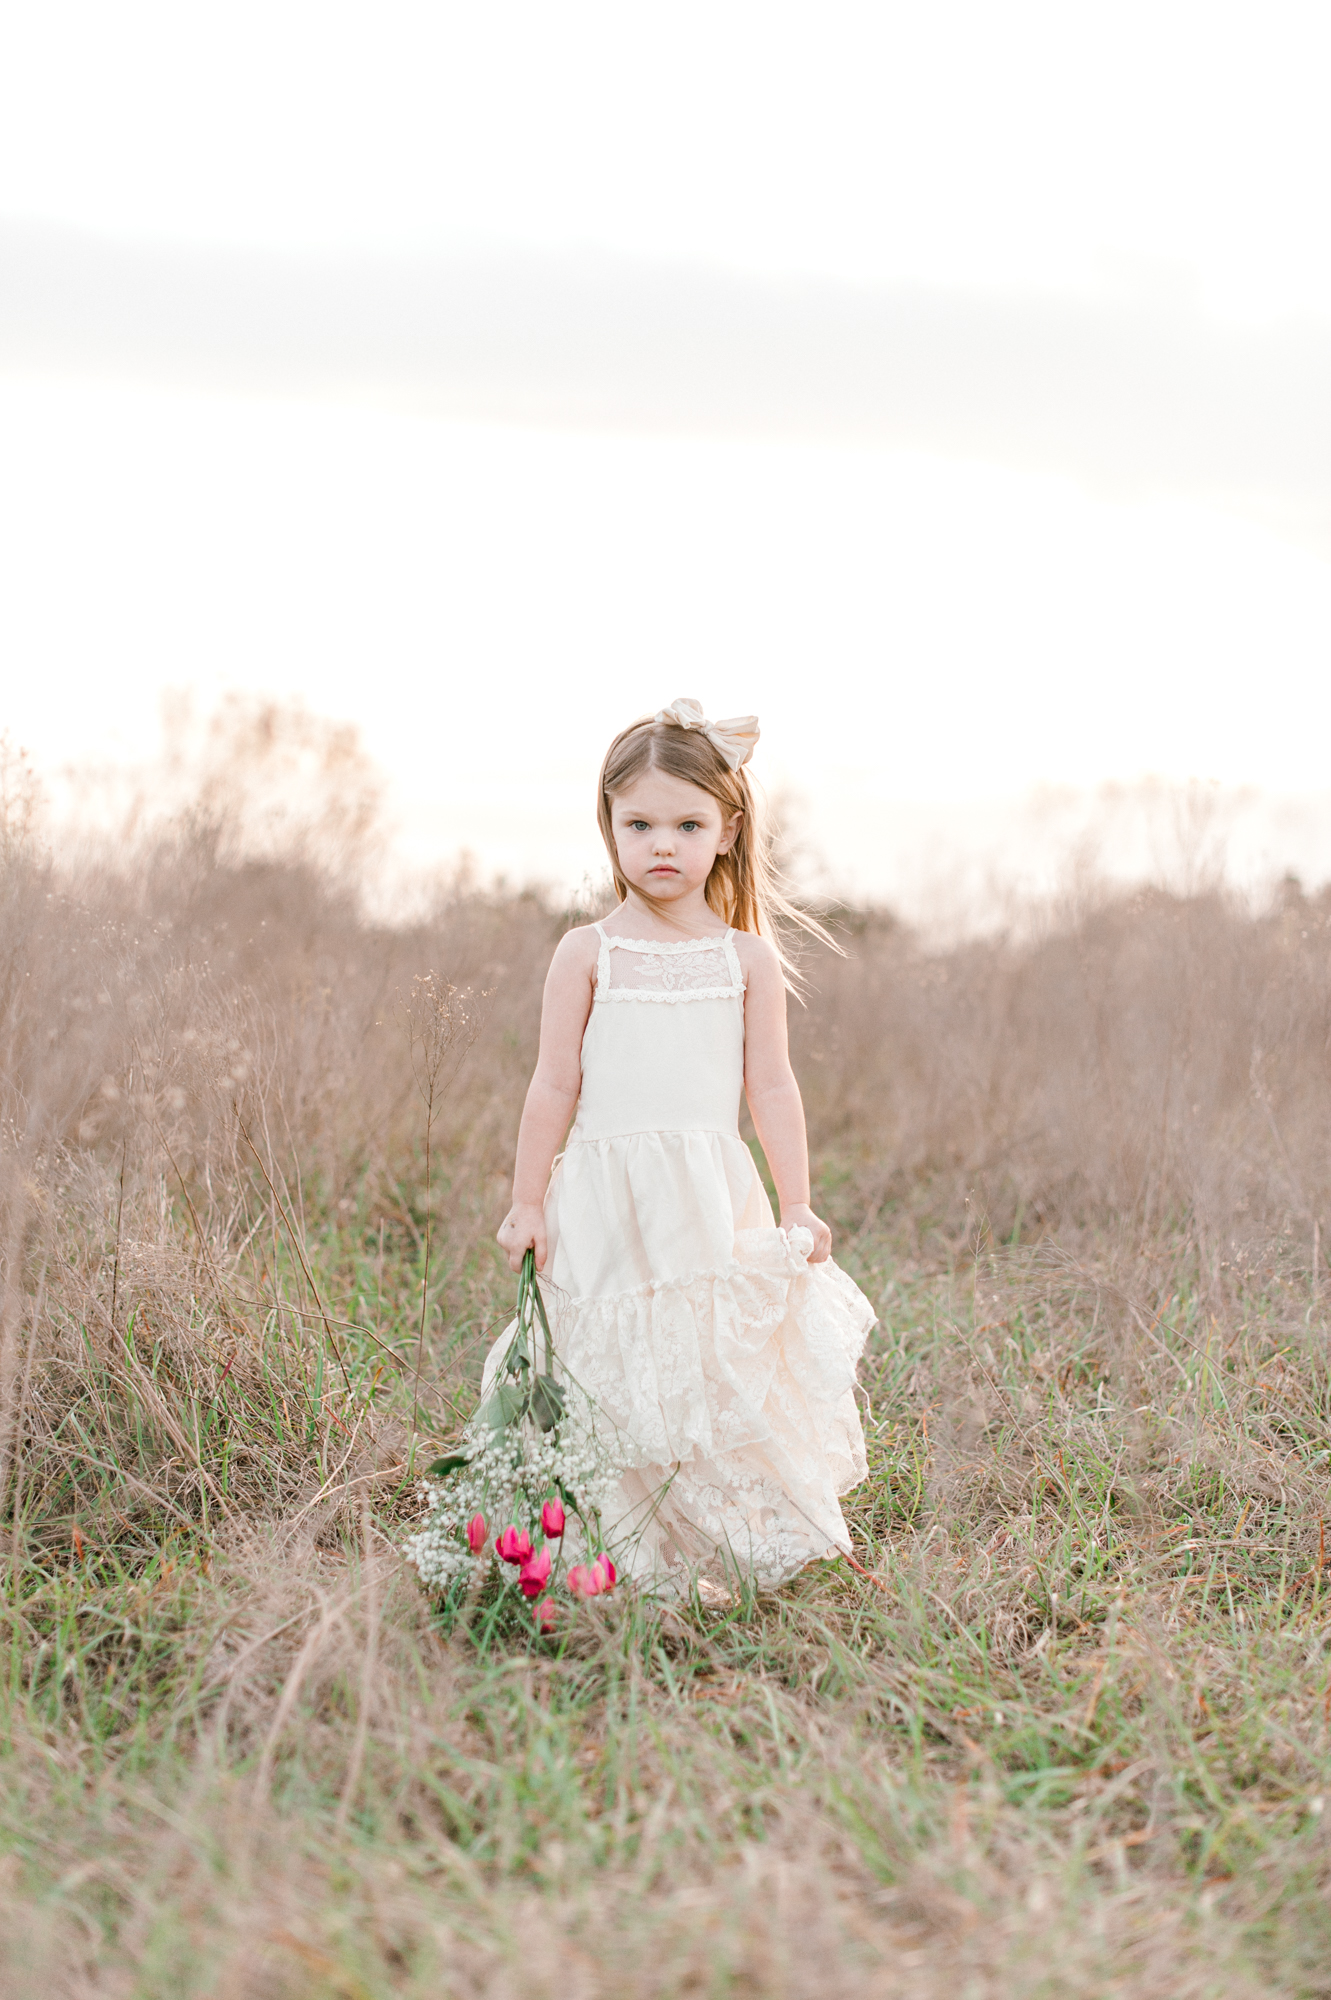 Toddler girl walking through a tall grass field holding a bouquet of flowers. 